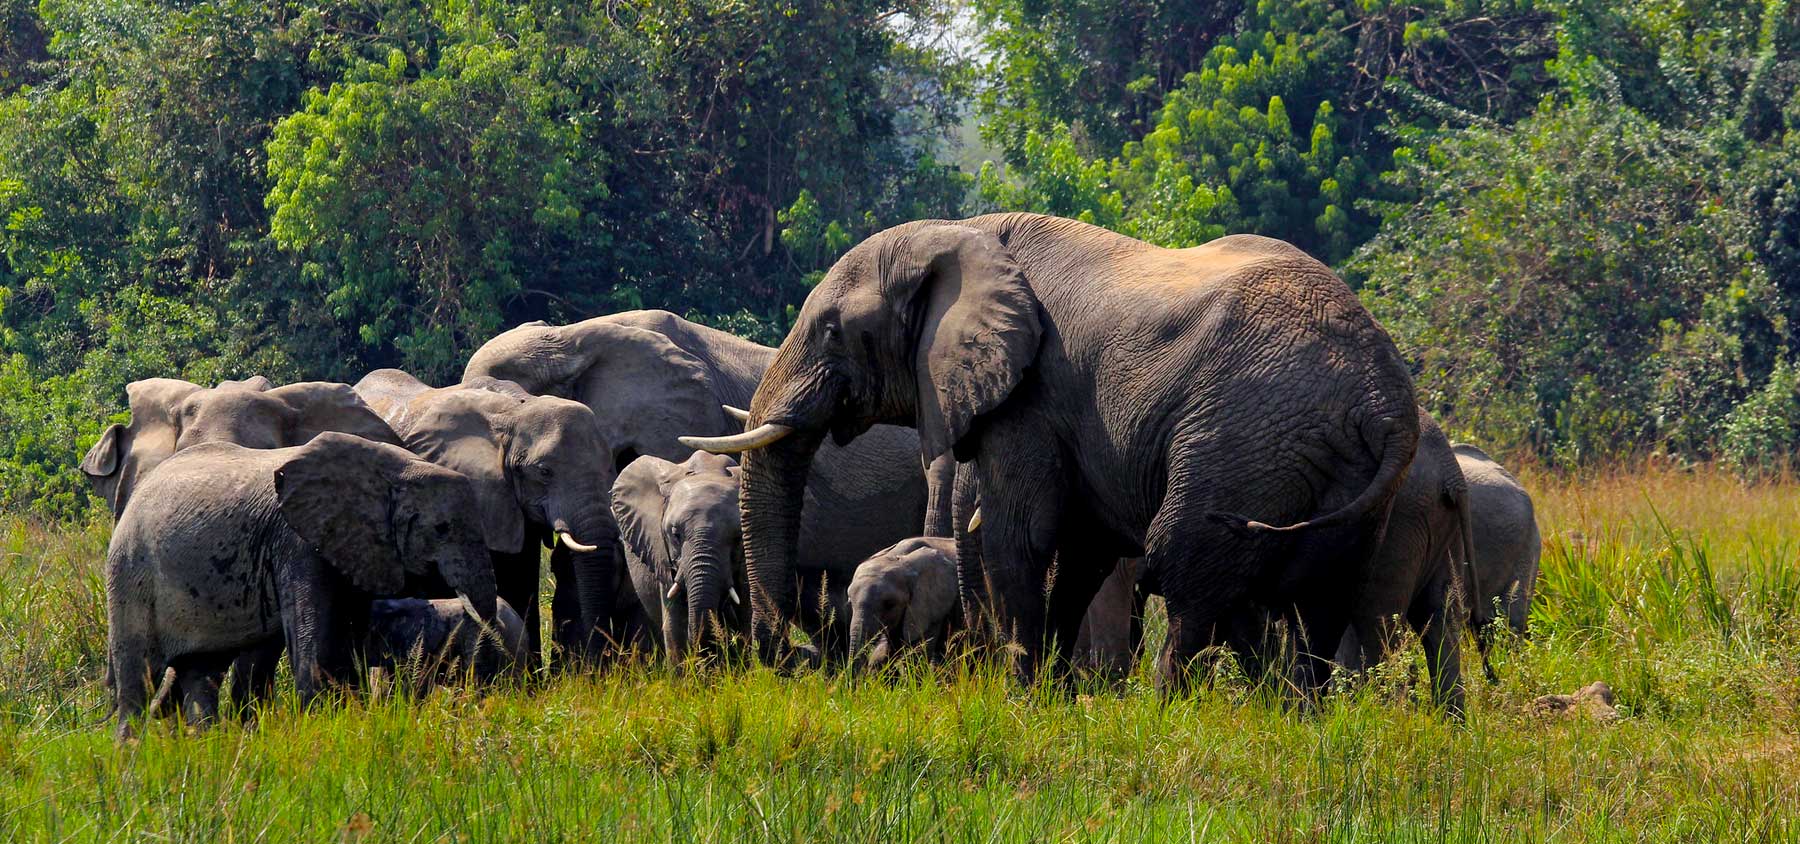 elephants-in-uganda-game-parks